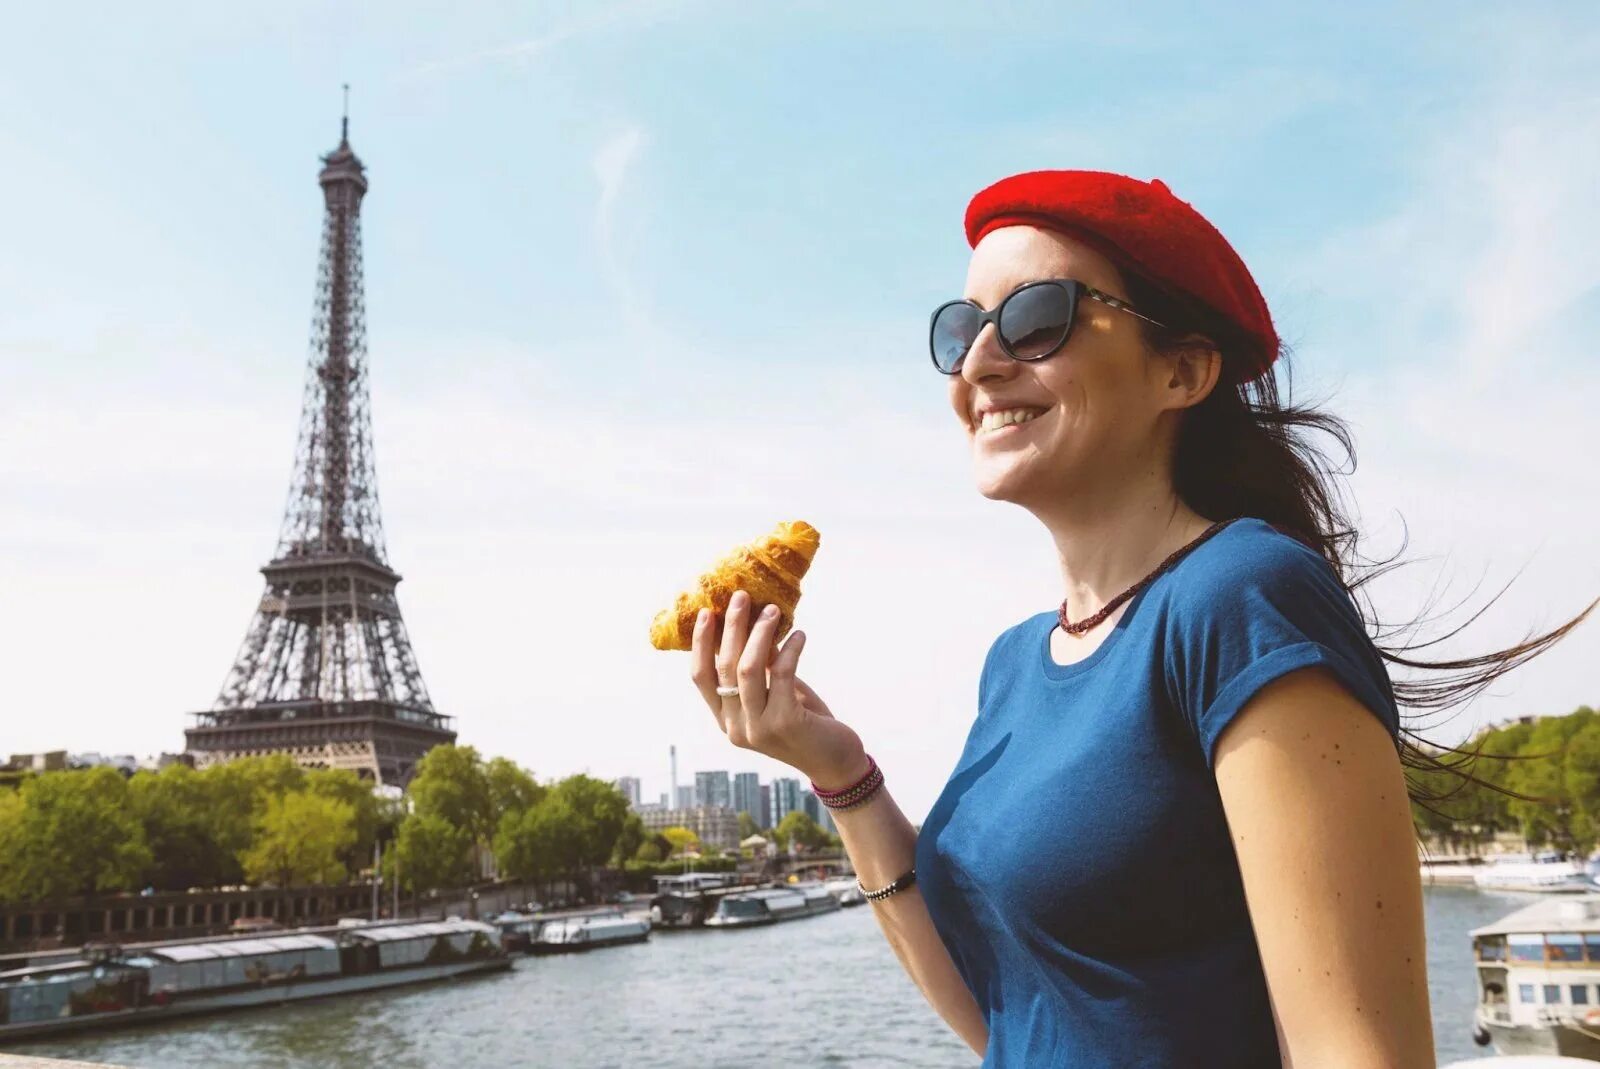 Француз определенный. Франция люди. Француз с багетом на фоне Эйфелевой башни. Девушка с круассаном. Девушка с круассаном в Париже.